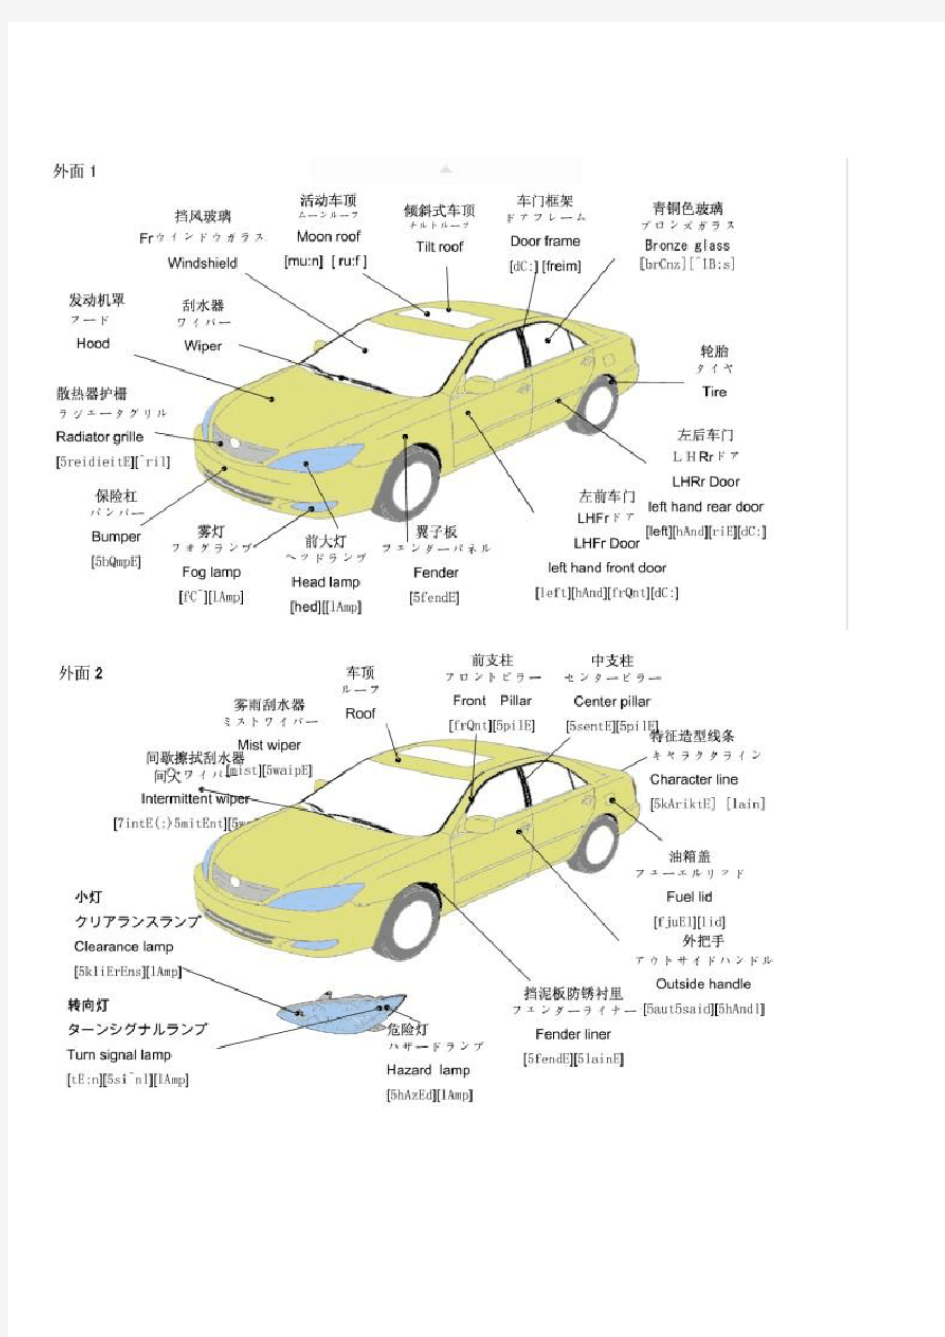 汽车零部件详解(日语英语)